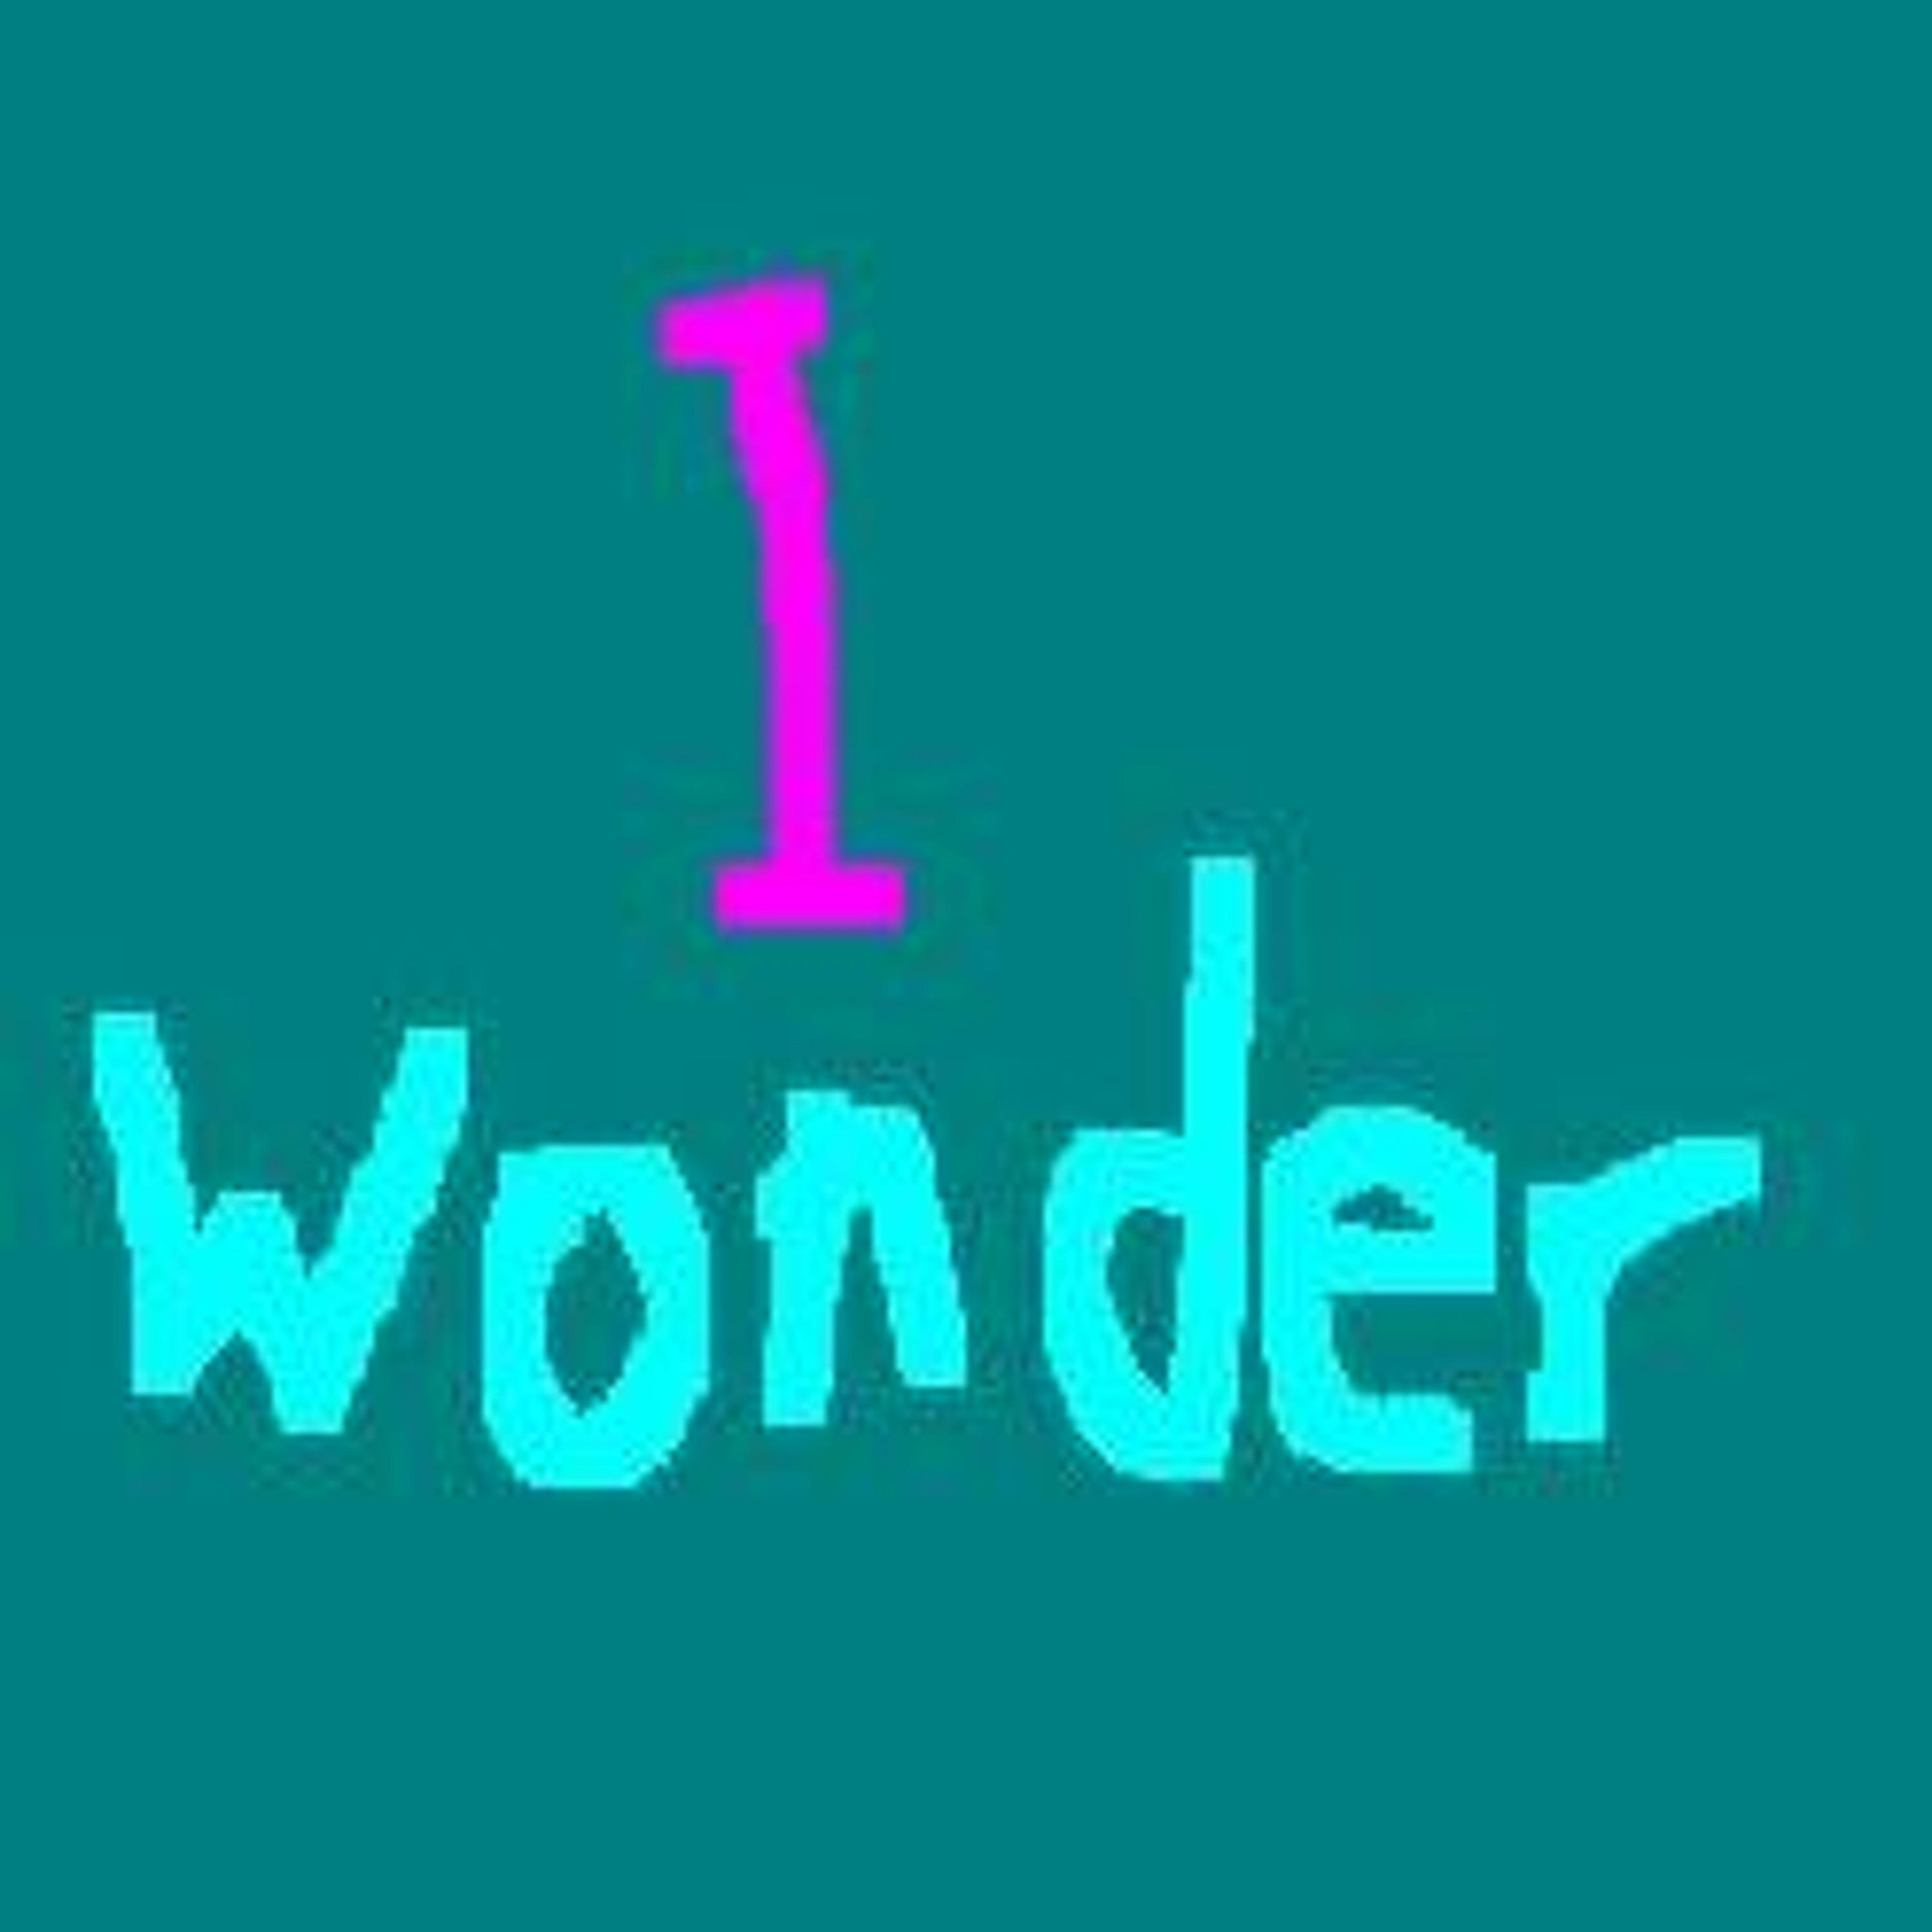 I Wonder